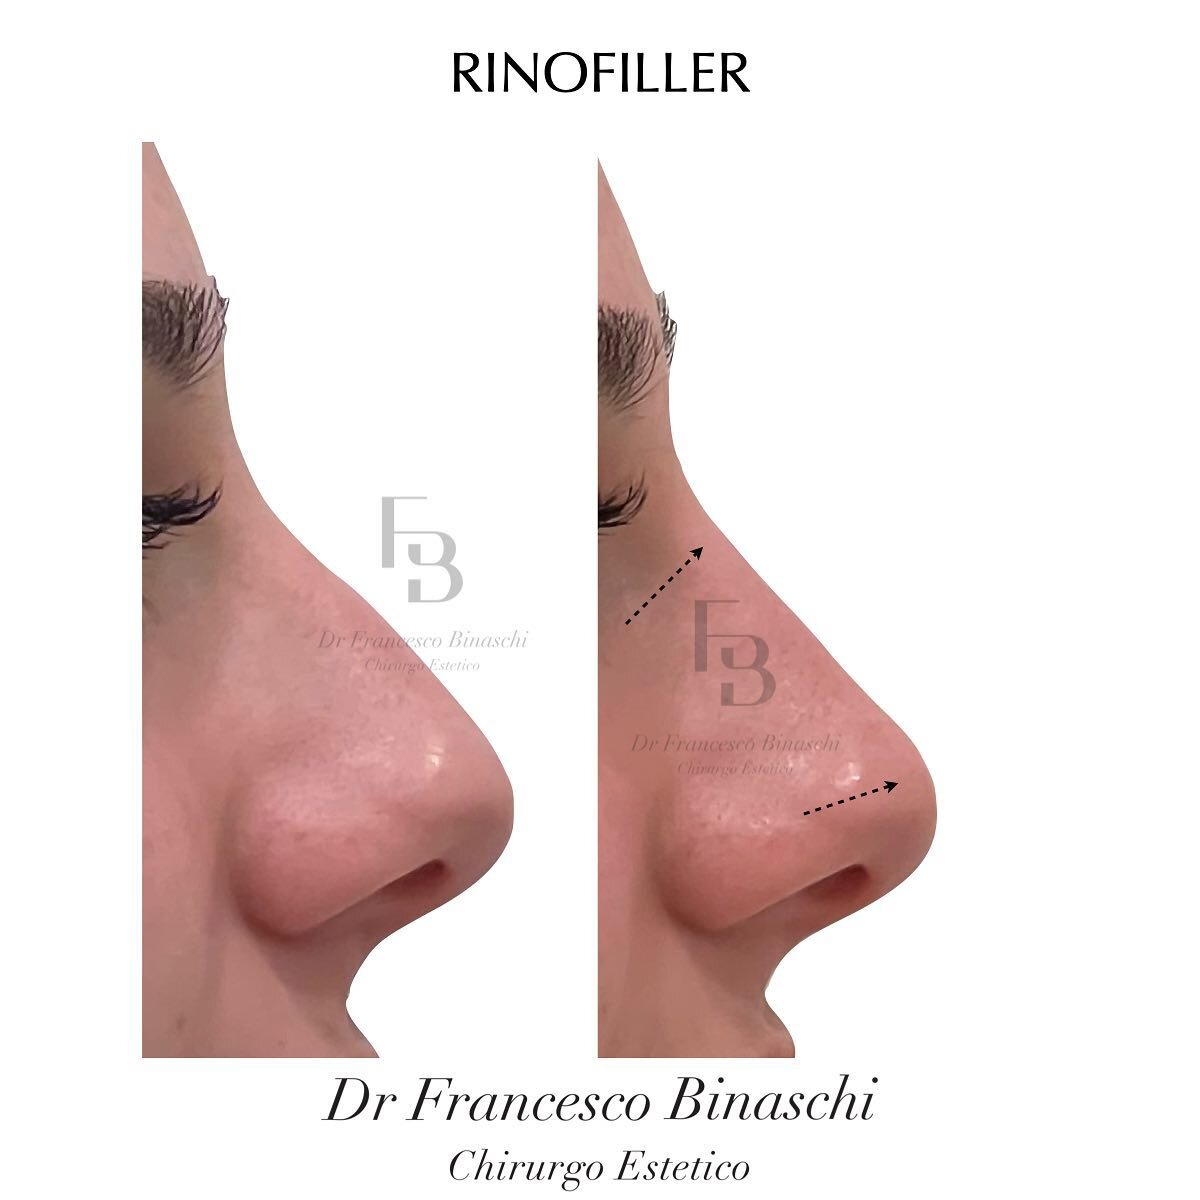 RINOFILLER - PRIMA/DOPO

🔎 Il naso della paziente nell&rsquo;immagine a sinistra presenta una curva, un inestetismo che pu&ograve; non piacere sul proprio viso. 

🎯 Alla destra si ha un naso molto pi&ugrave; lineare, senza sporgenze. 

🌟 Grazie al